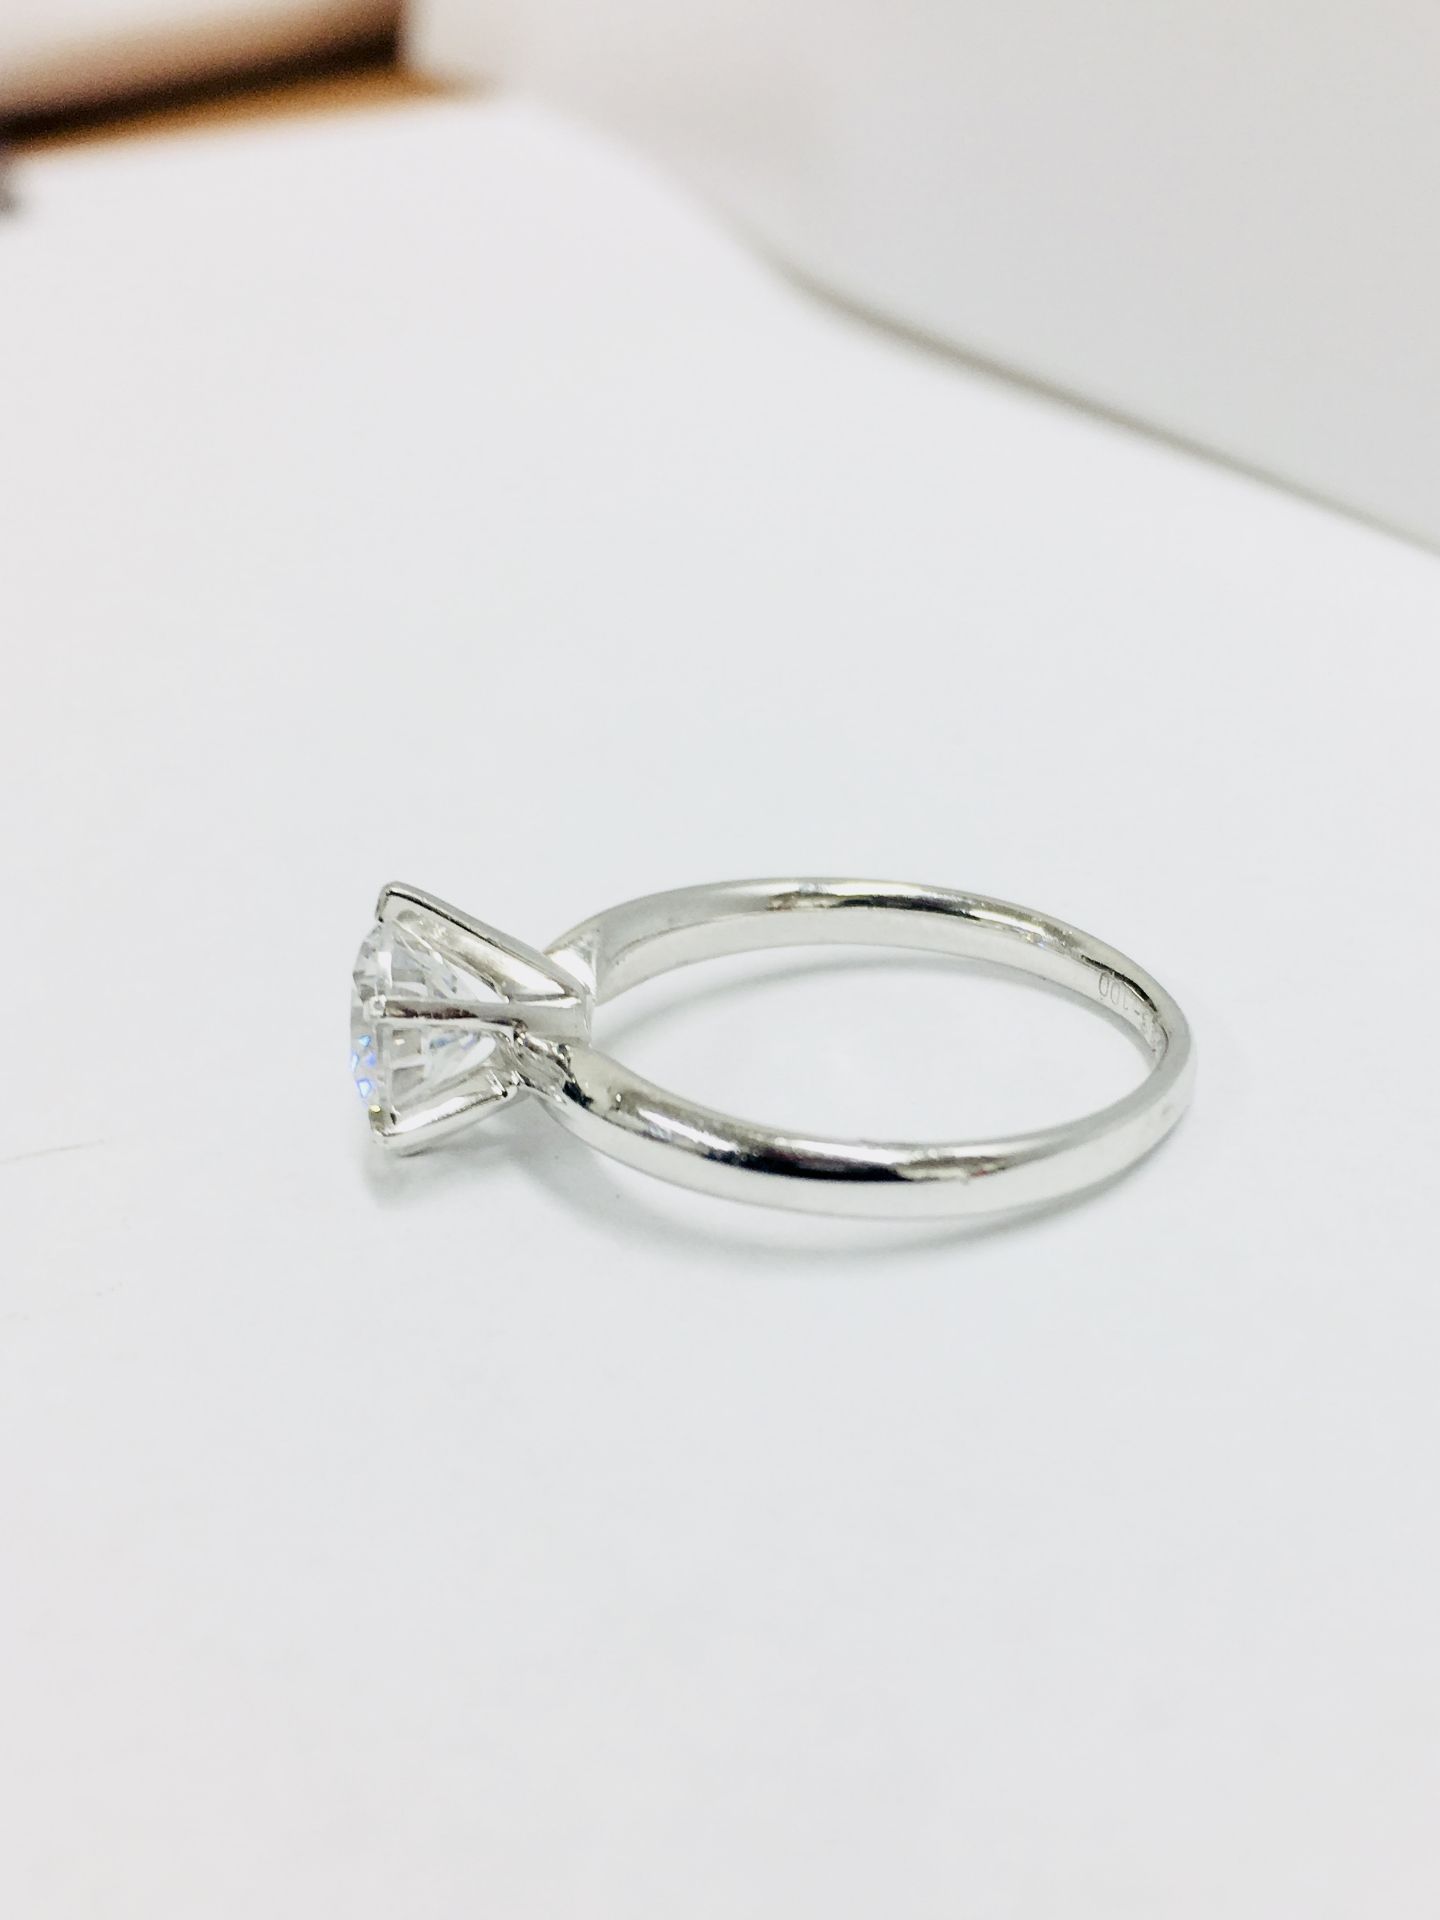 Platinum diamond solitaire ring 6 claw,0.50ct brilliant cut diamond h colour vs clarity enhanced,3. - Bild 2 aus 3